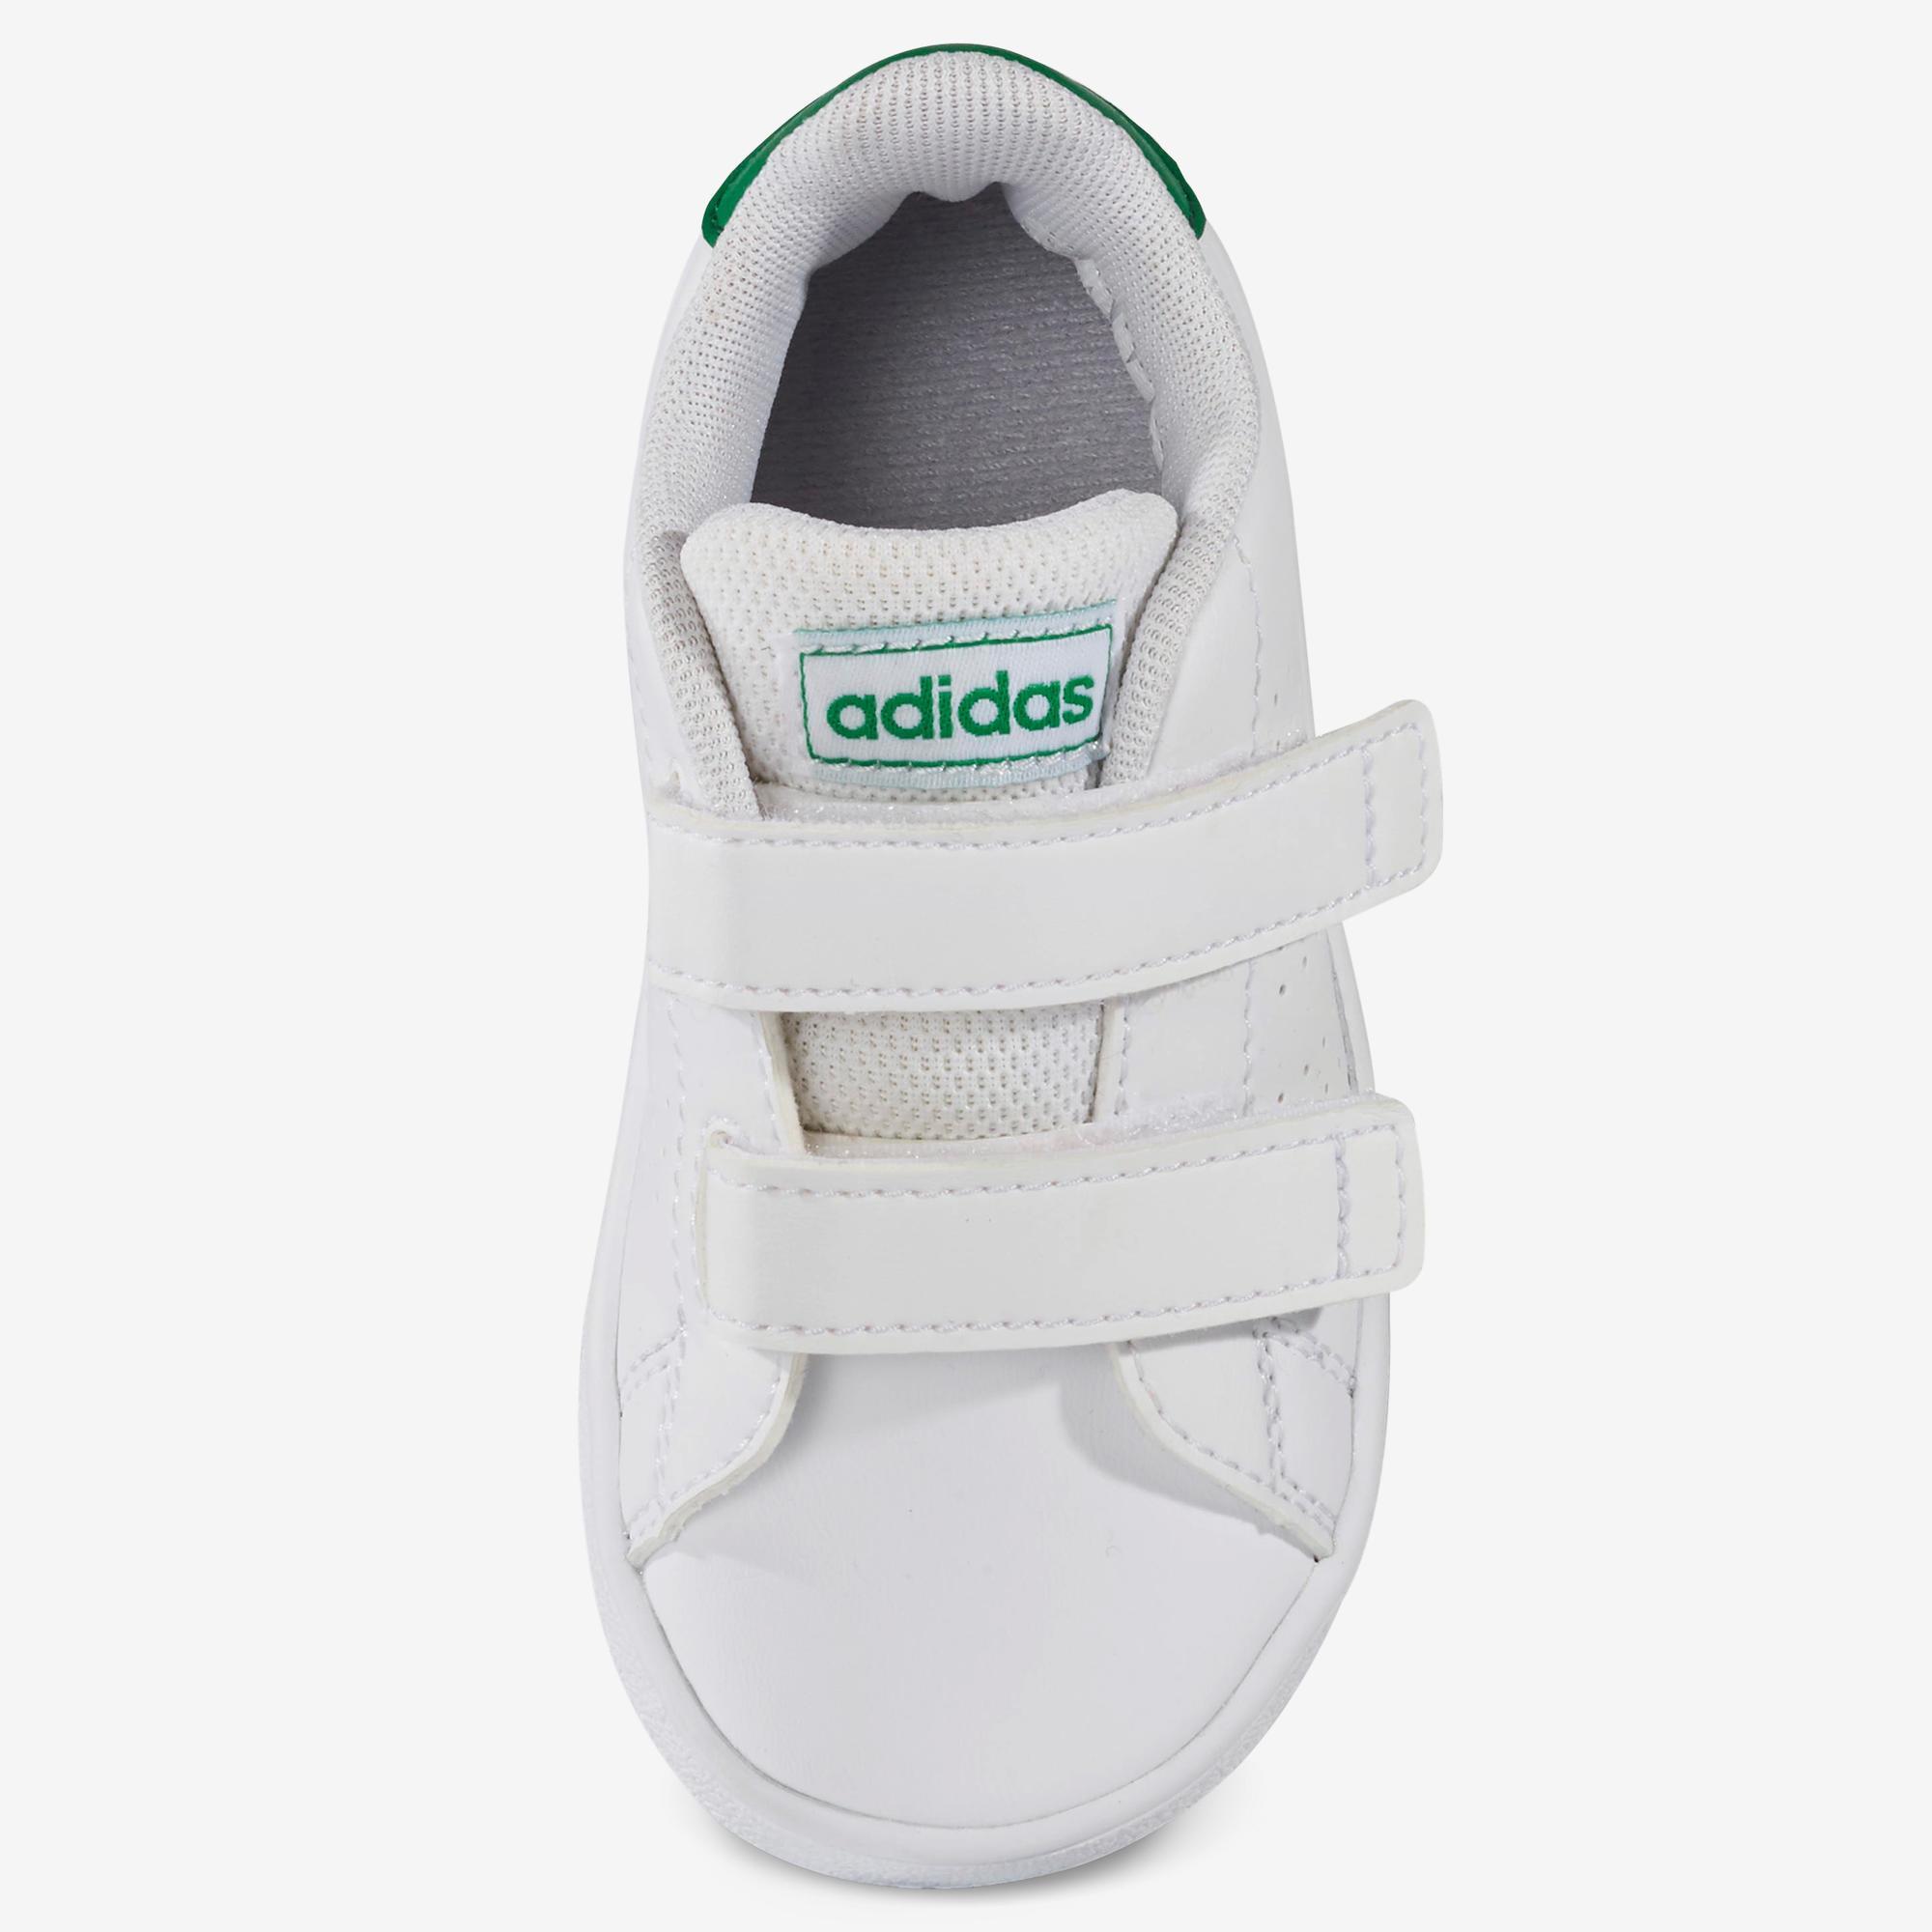 Zapatillas Adidas Bebé primeros pasos Advantage blanco verde talla 19 al 27  ADIDAS | Decathlon